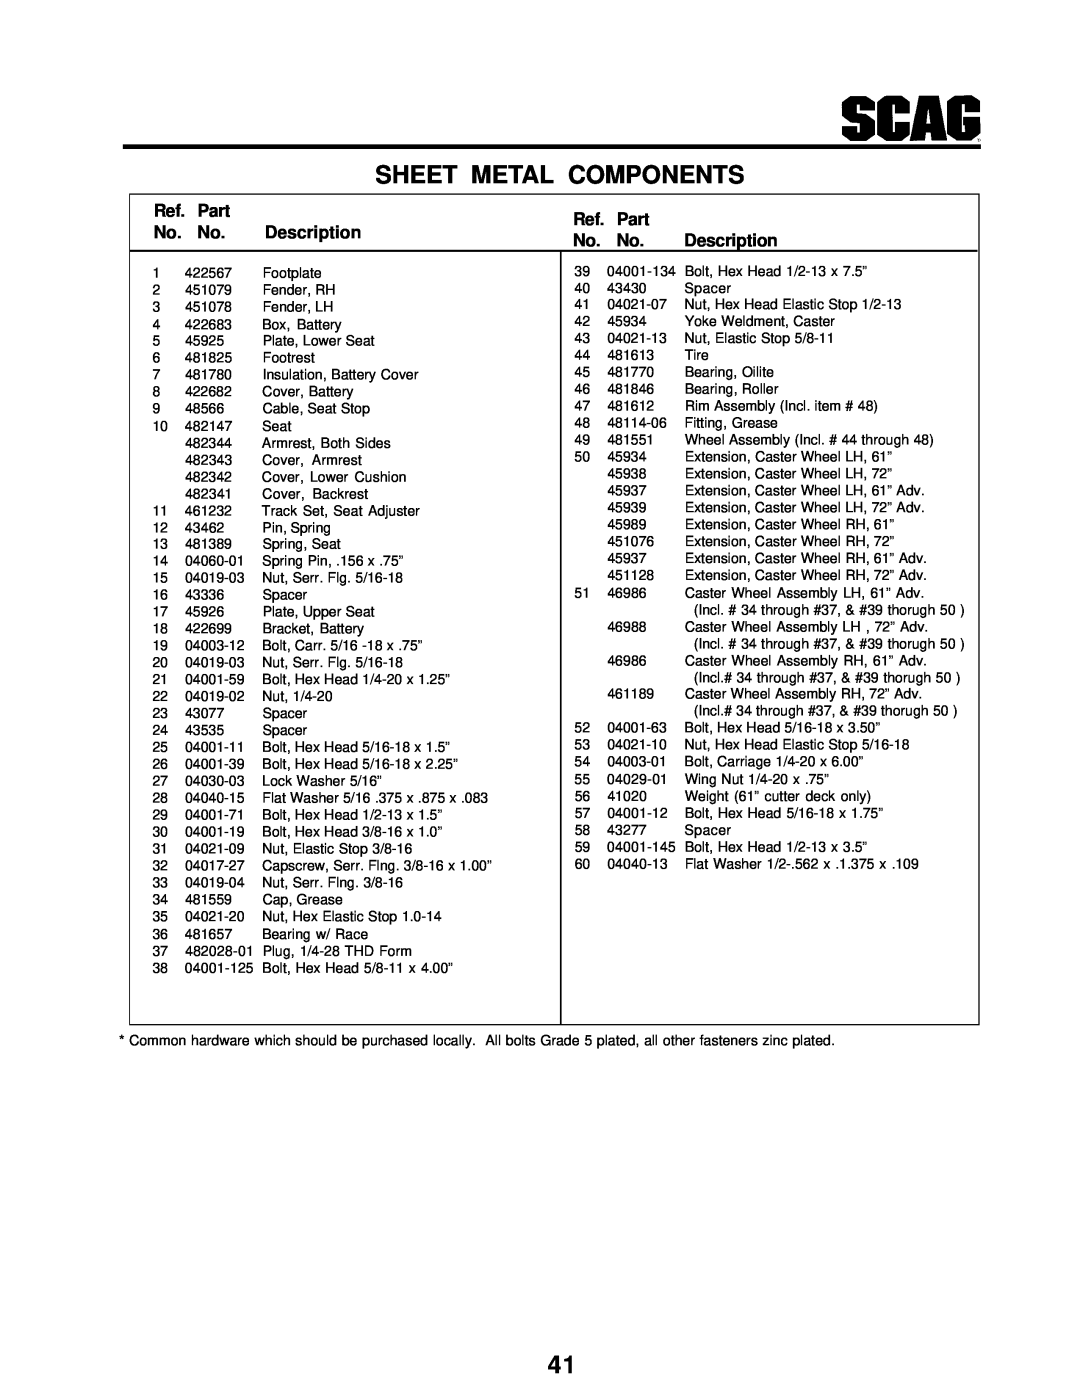 Scag Power Equipment STT-31BSG manual Sheet Metal Components, Ref. Part, No. No, Description 